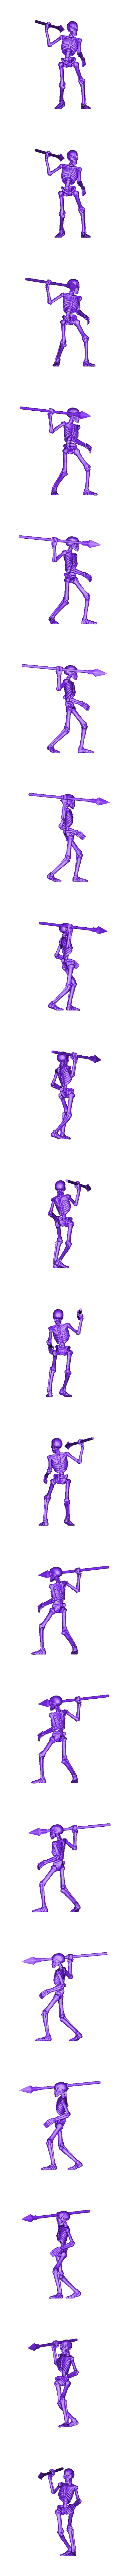 skeletons6_52mm.stl Archivo STL Set de 7 esqueletos de guerreros (+ versión precompatible) (18) - Oscuridad Caos Medieval Age of Sigmar Fantasy Warhammer・Objeto imprimible en 3D para descargar, Hartolia-Miniatures